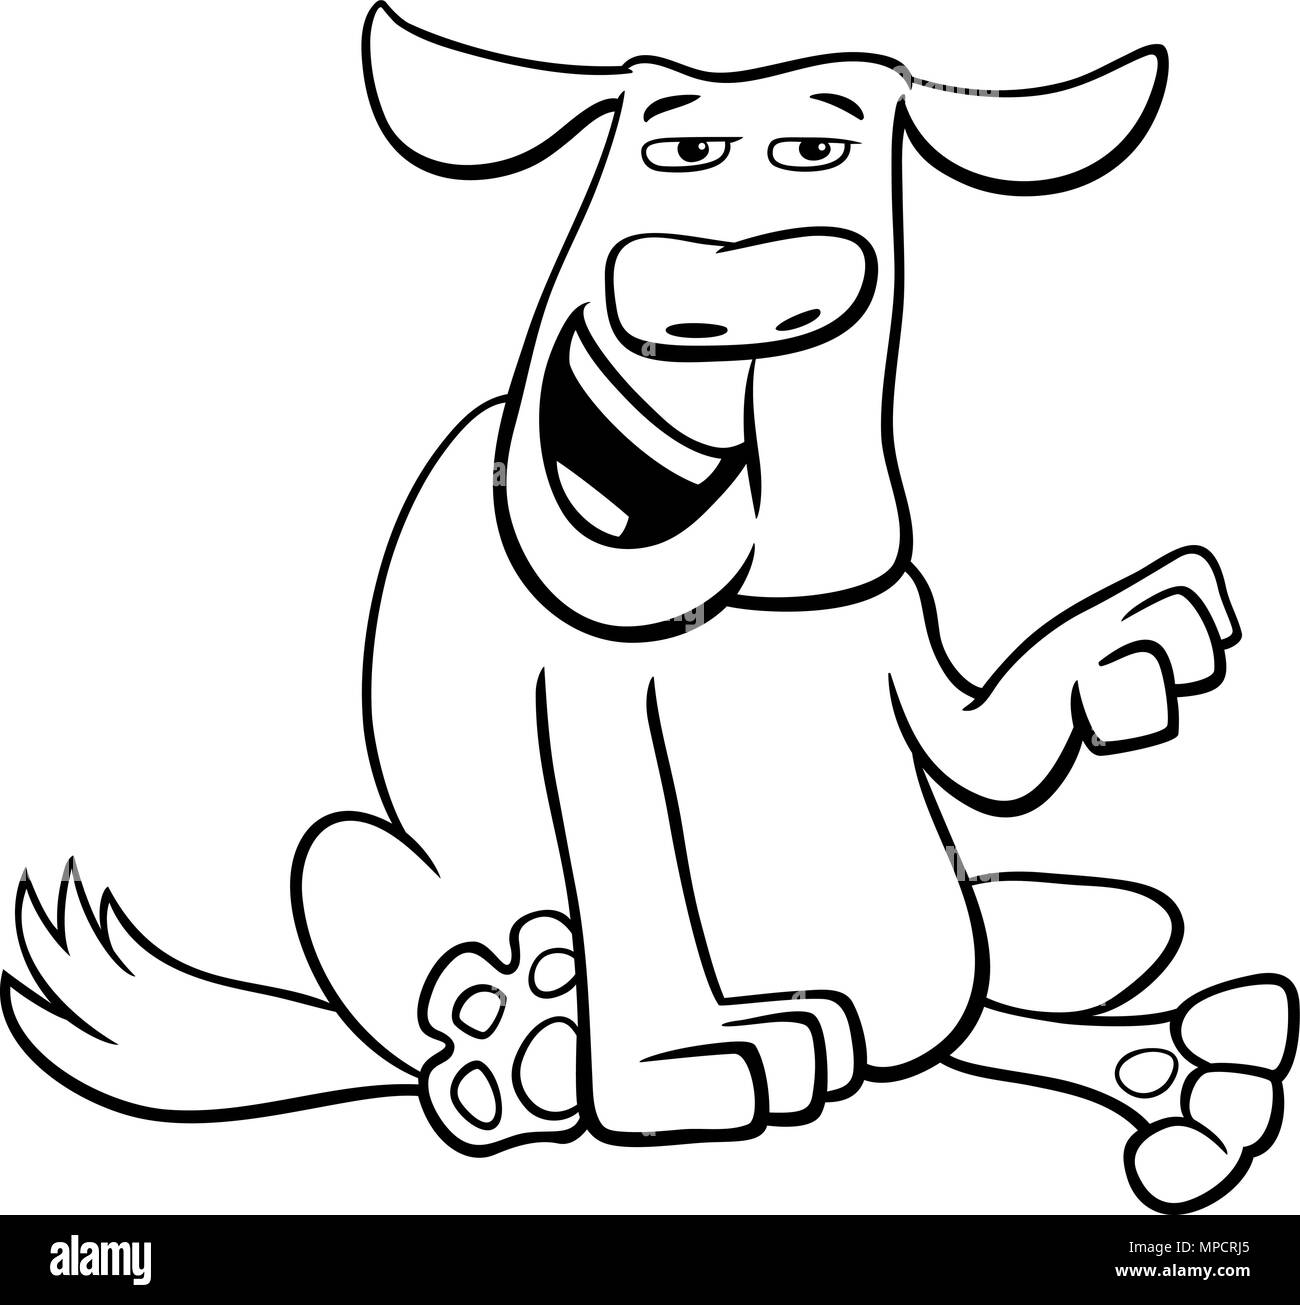 Schwarz Weiss Cartoon Illustration Der Lustige Hund Tier Charakter Malbuch Stock Vektorgrafik Alamy